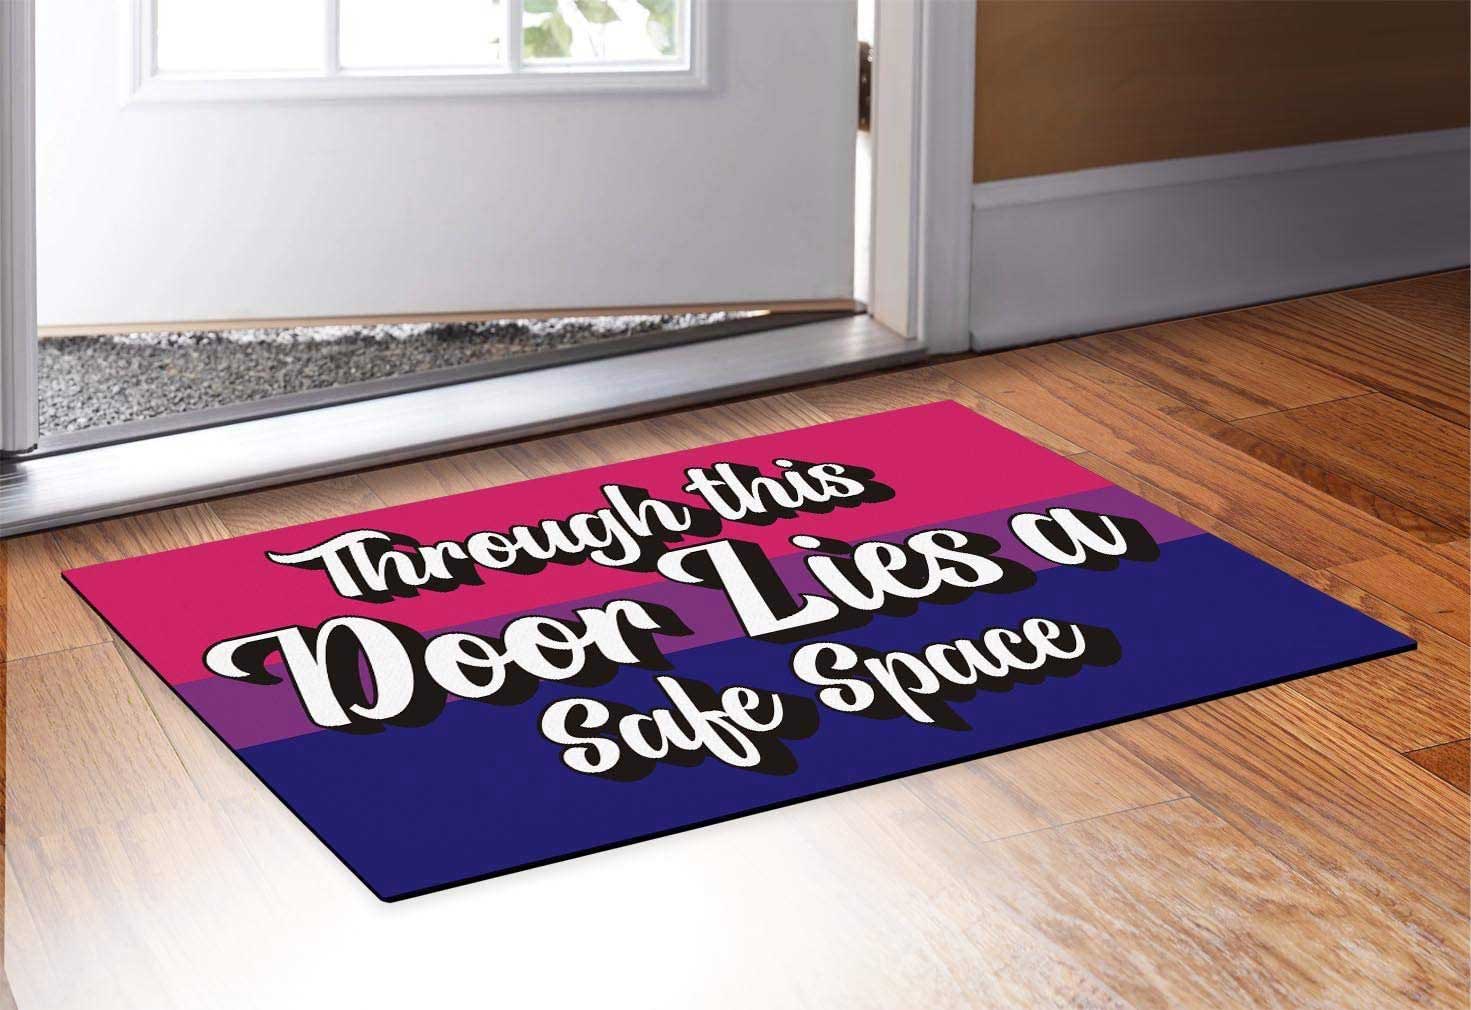 Bi Pride Bisexual Doormat Through This Door Lies A Safe Space Bi Gifts Decorative Doormat Bi